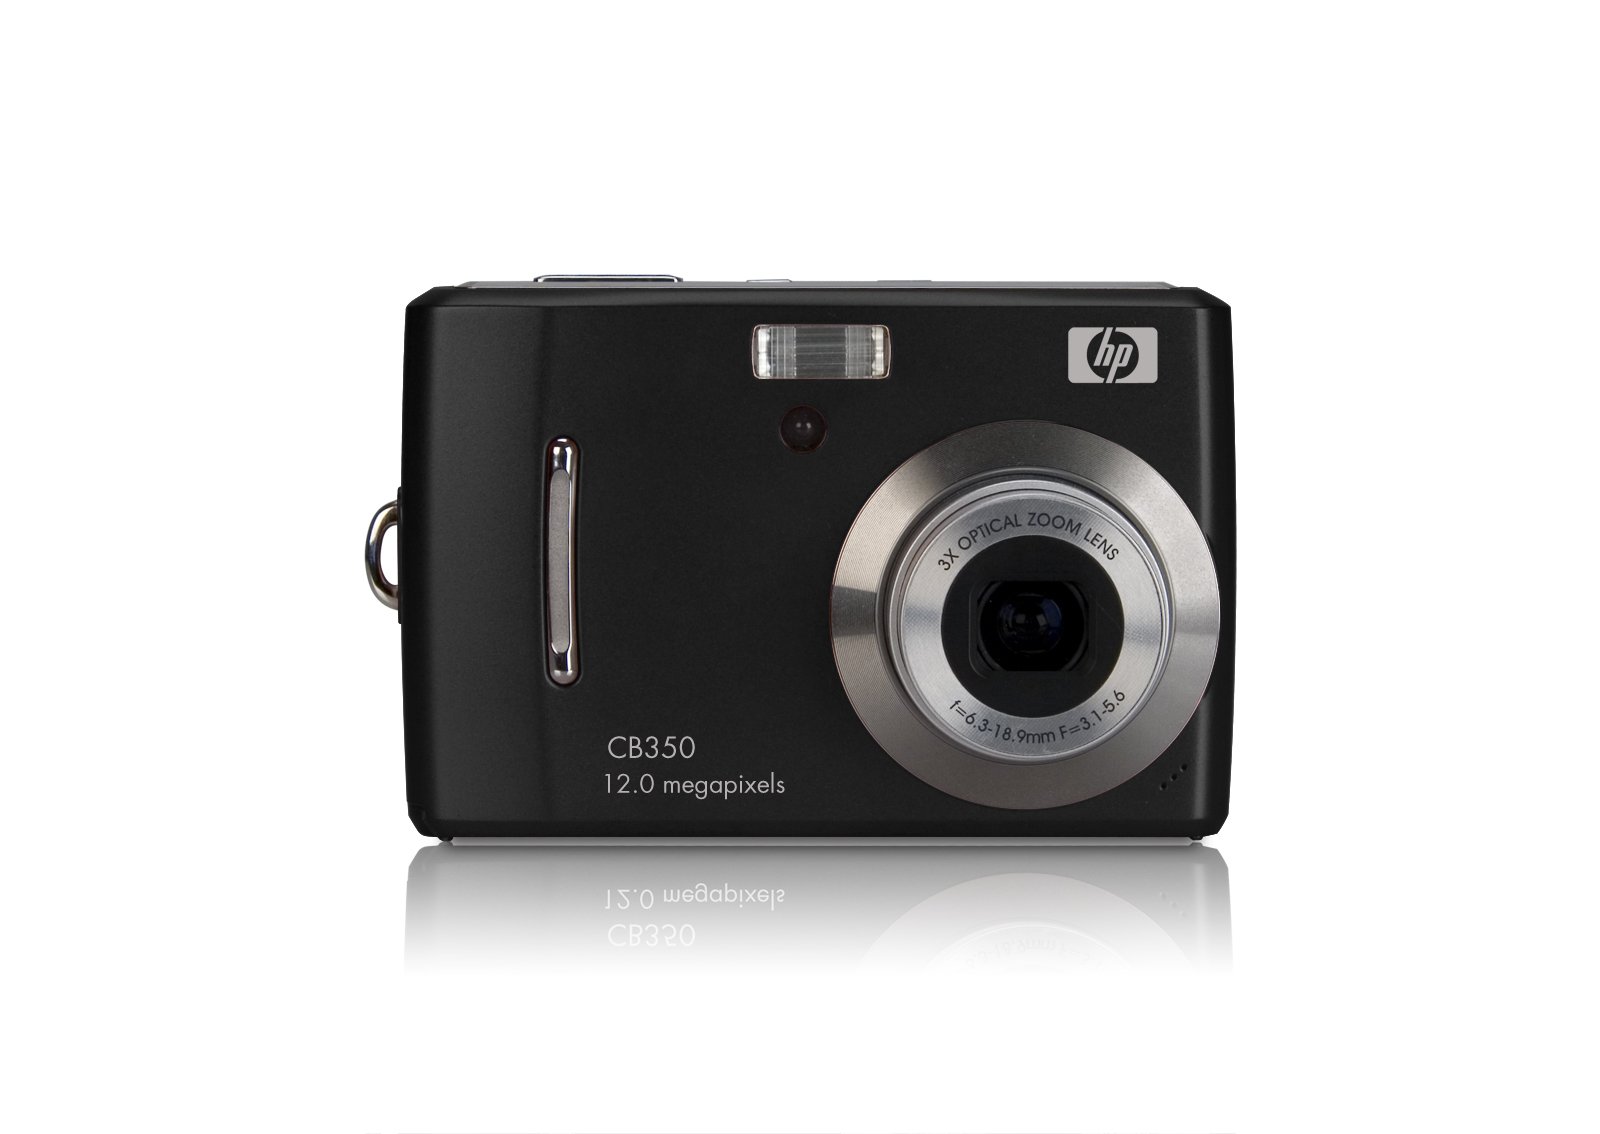 s300 Black Digital Camera